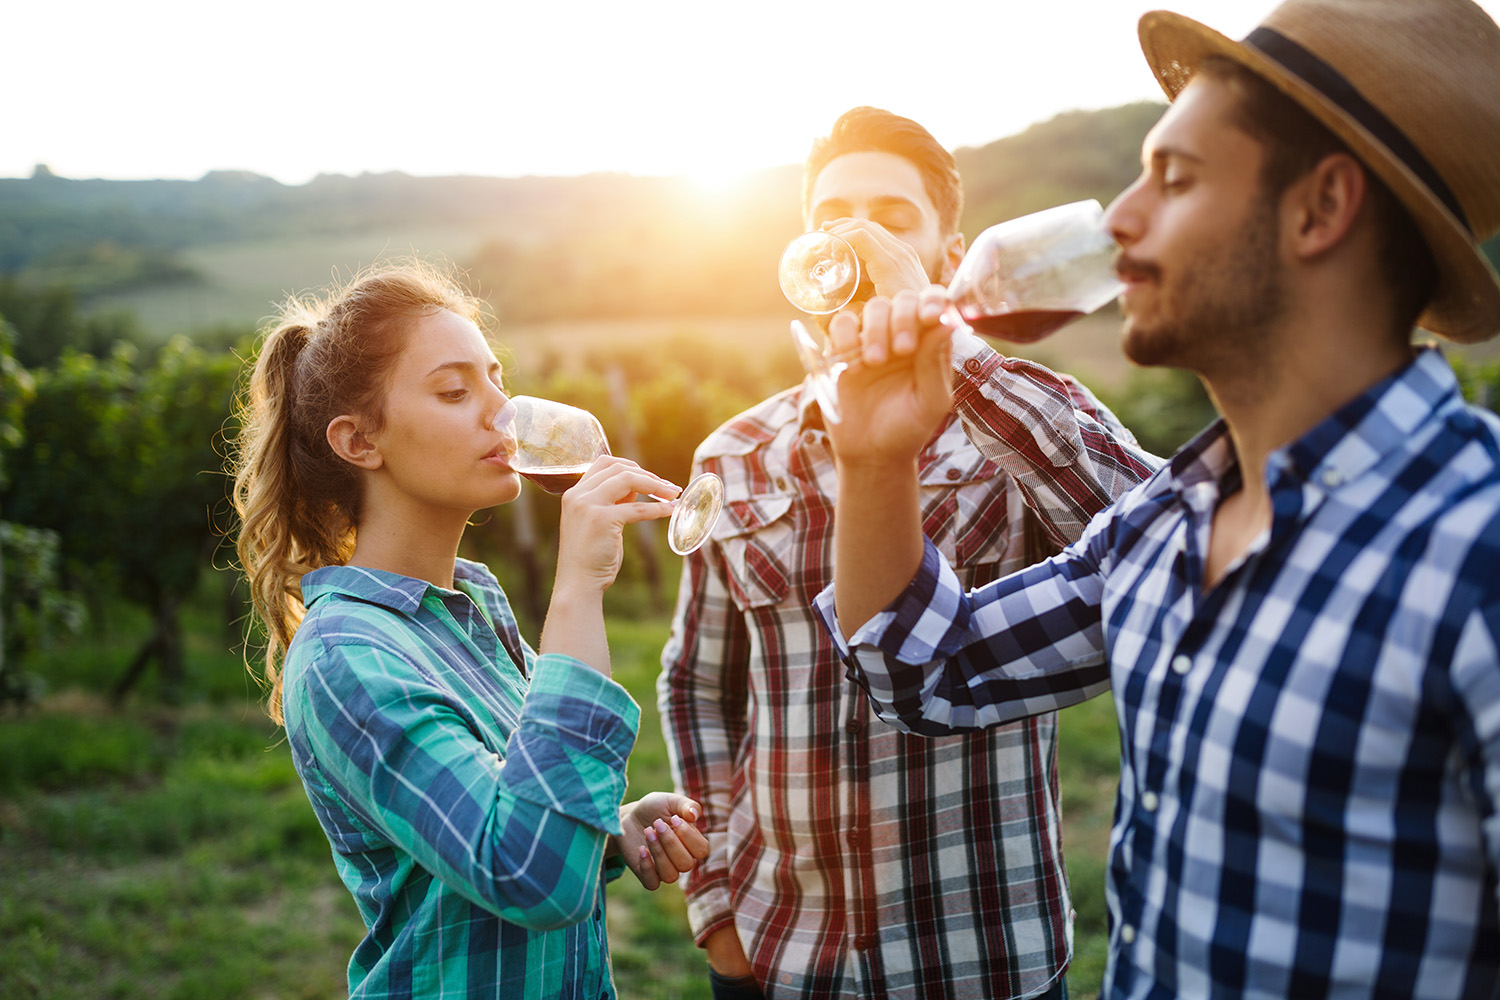 wine-growers-tasting-wine-in-vineyard-2021-08-26-17-32-06-utcsmall